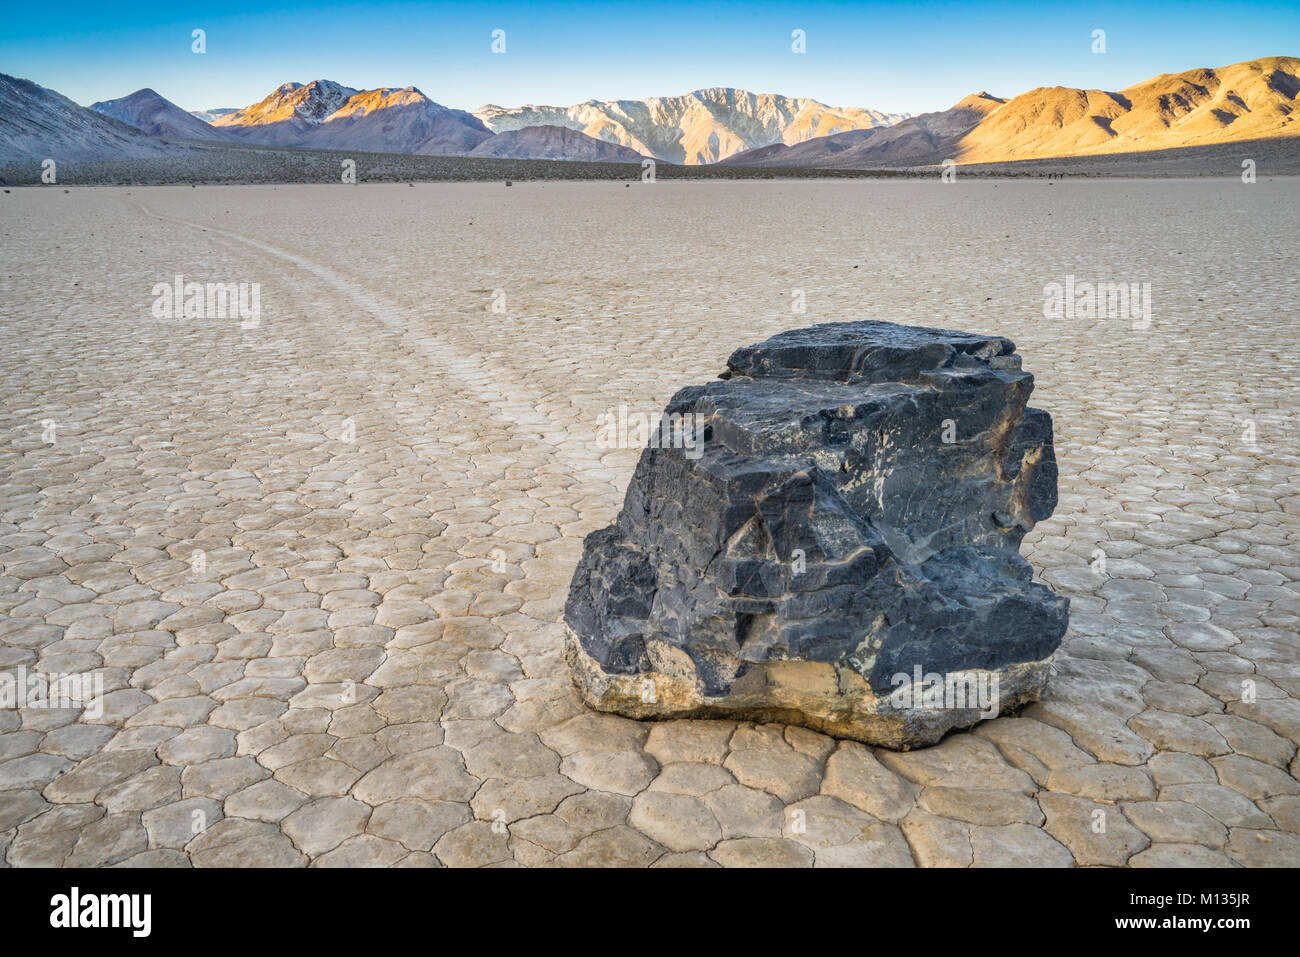 Le Racetrack Playa est situé au-dessus de la côté nord-ouest de la vallée de la mort, dans la région de Death Valley National Park, comté d'Inyo, Californie, États-Unis Banque D'Images